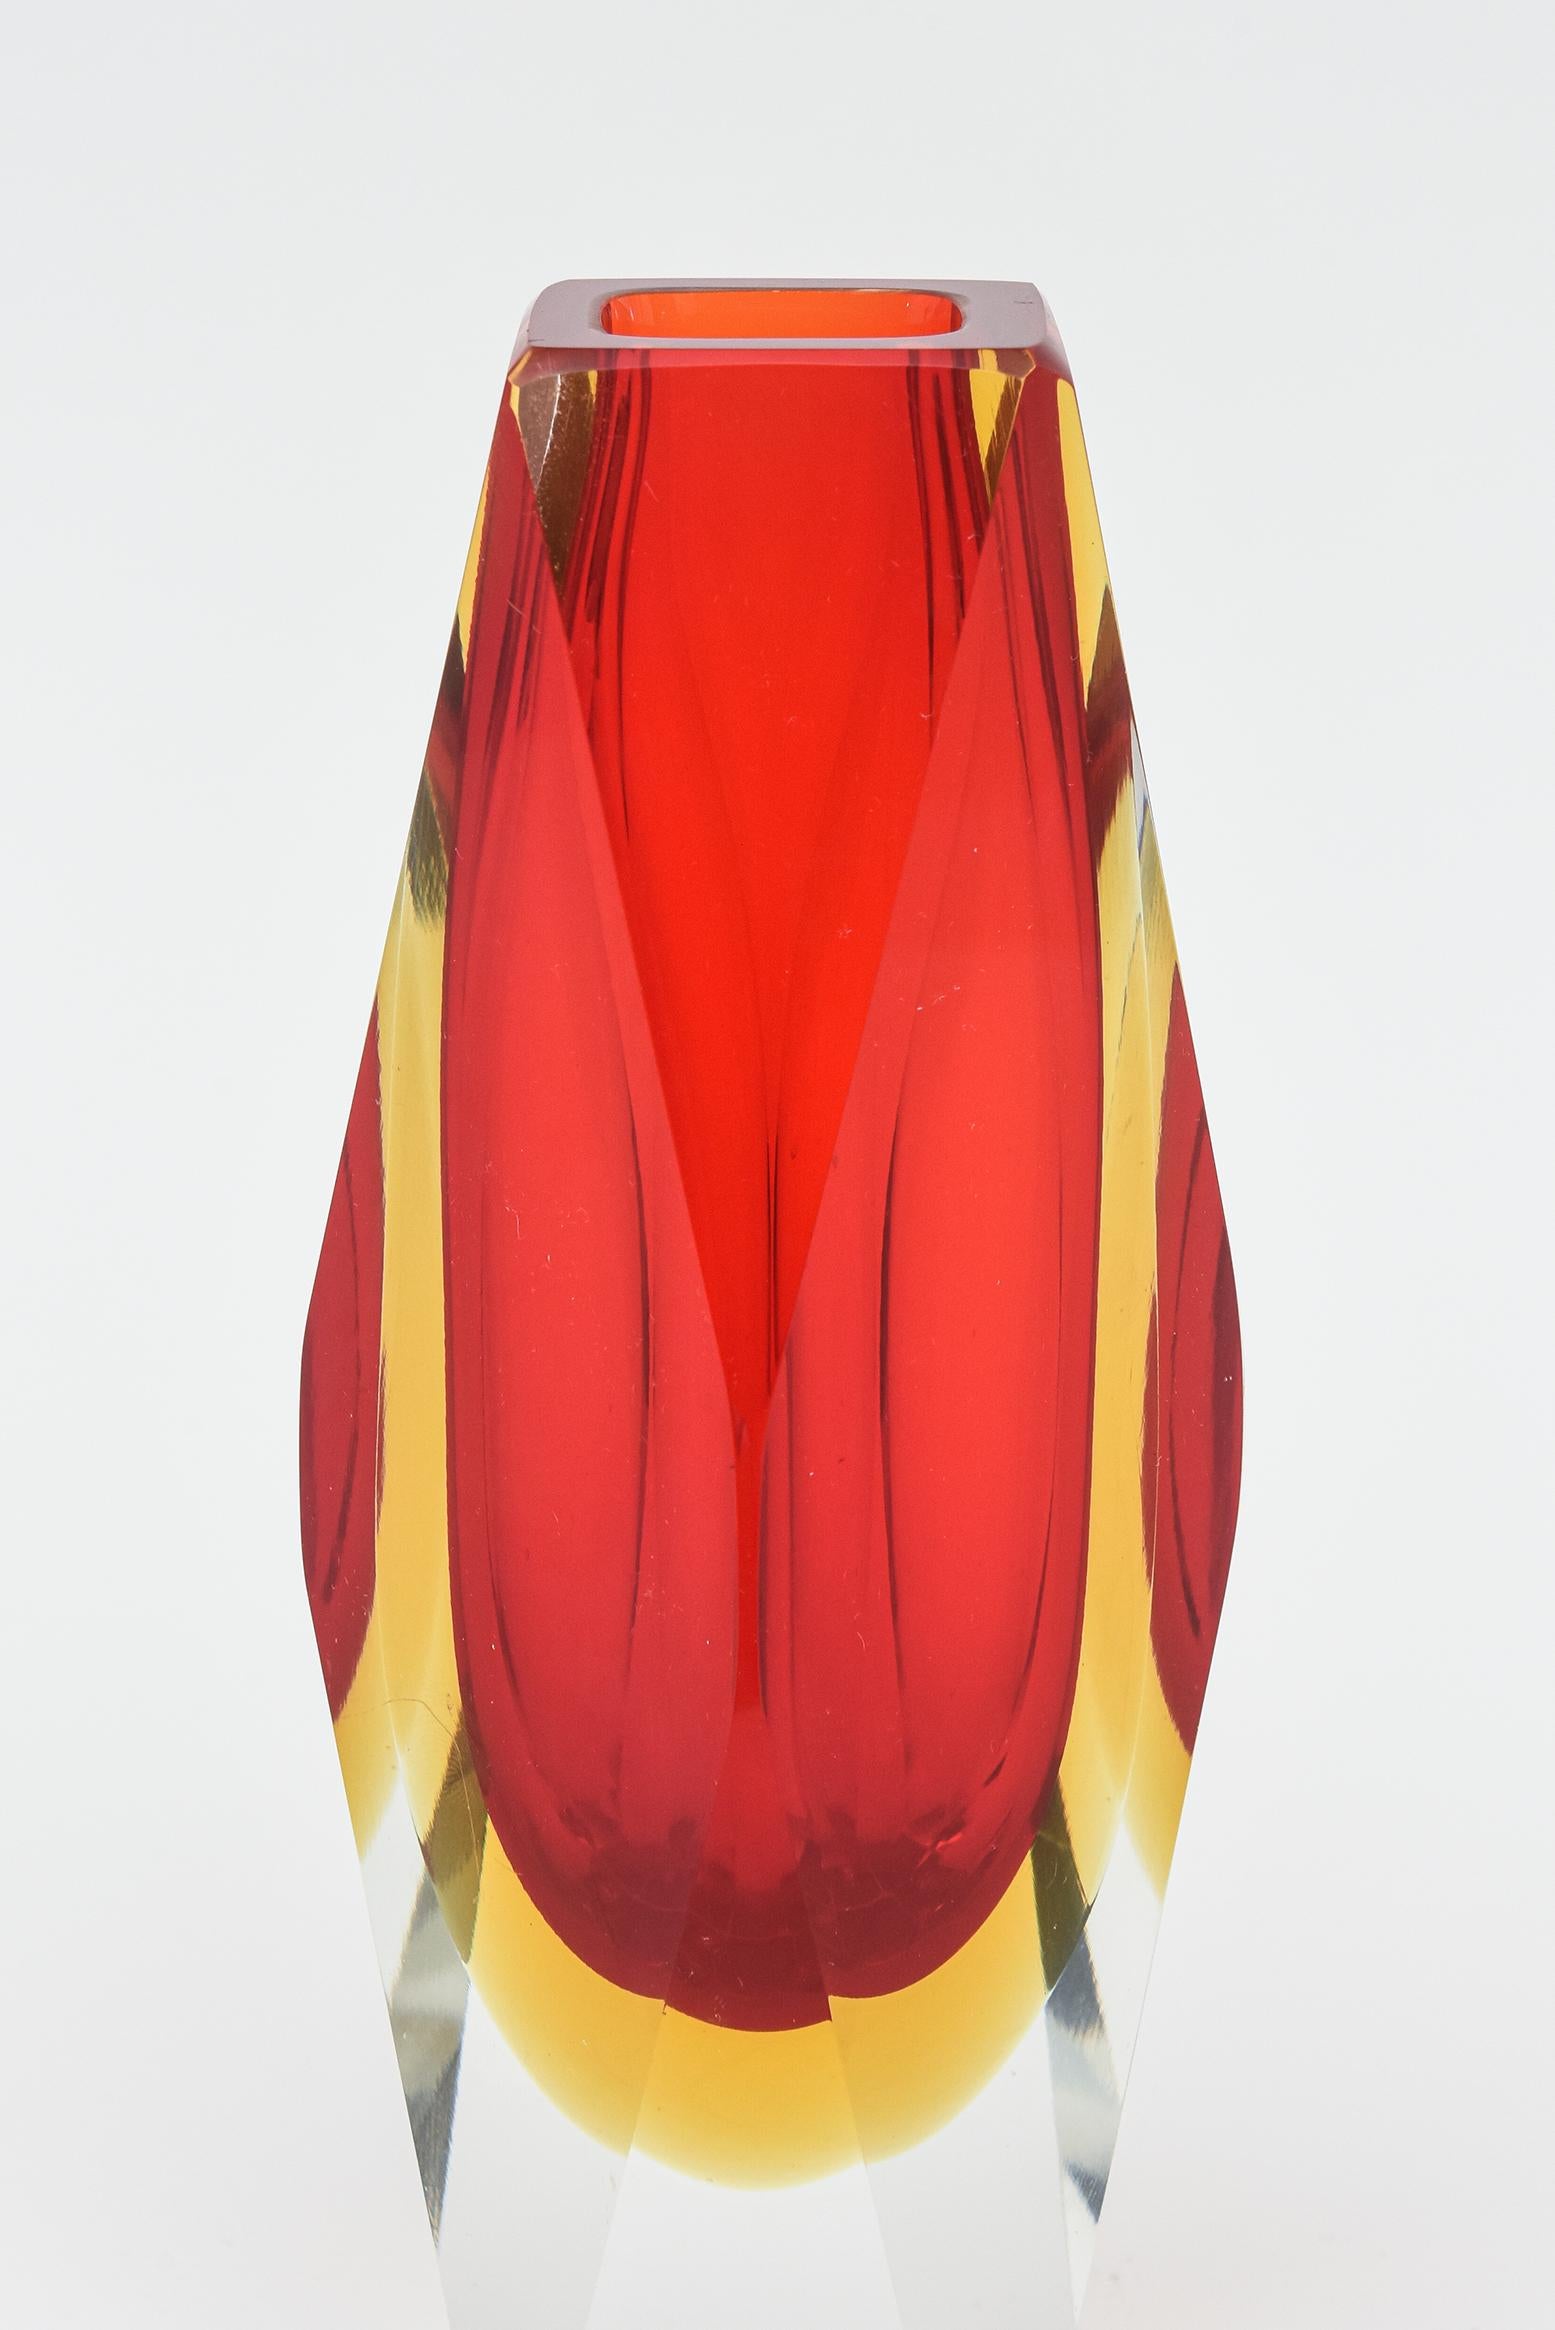 Fin du 20e siècle Mandruzzato - Vase en verre Sommerso rouge et jaune à facettes, Murano, Italie en vente